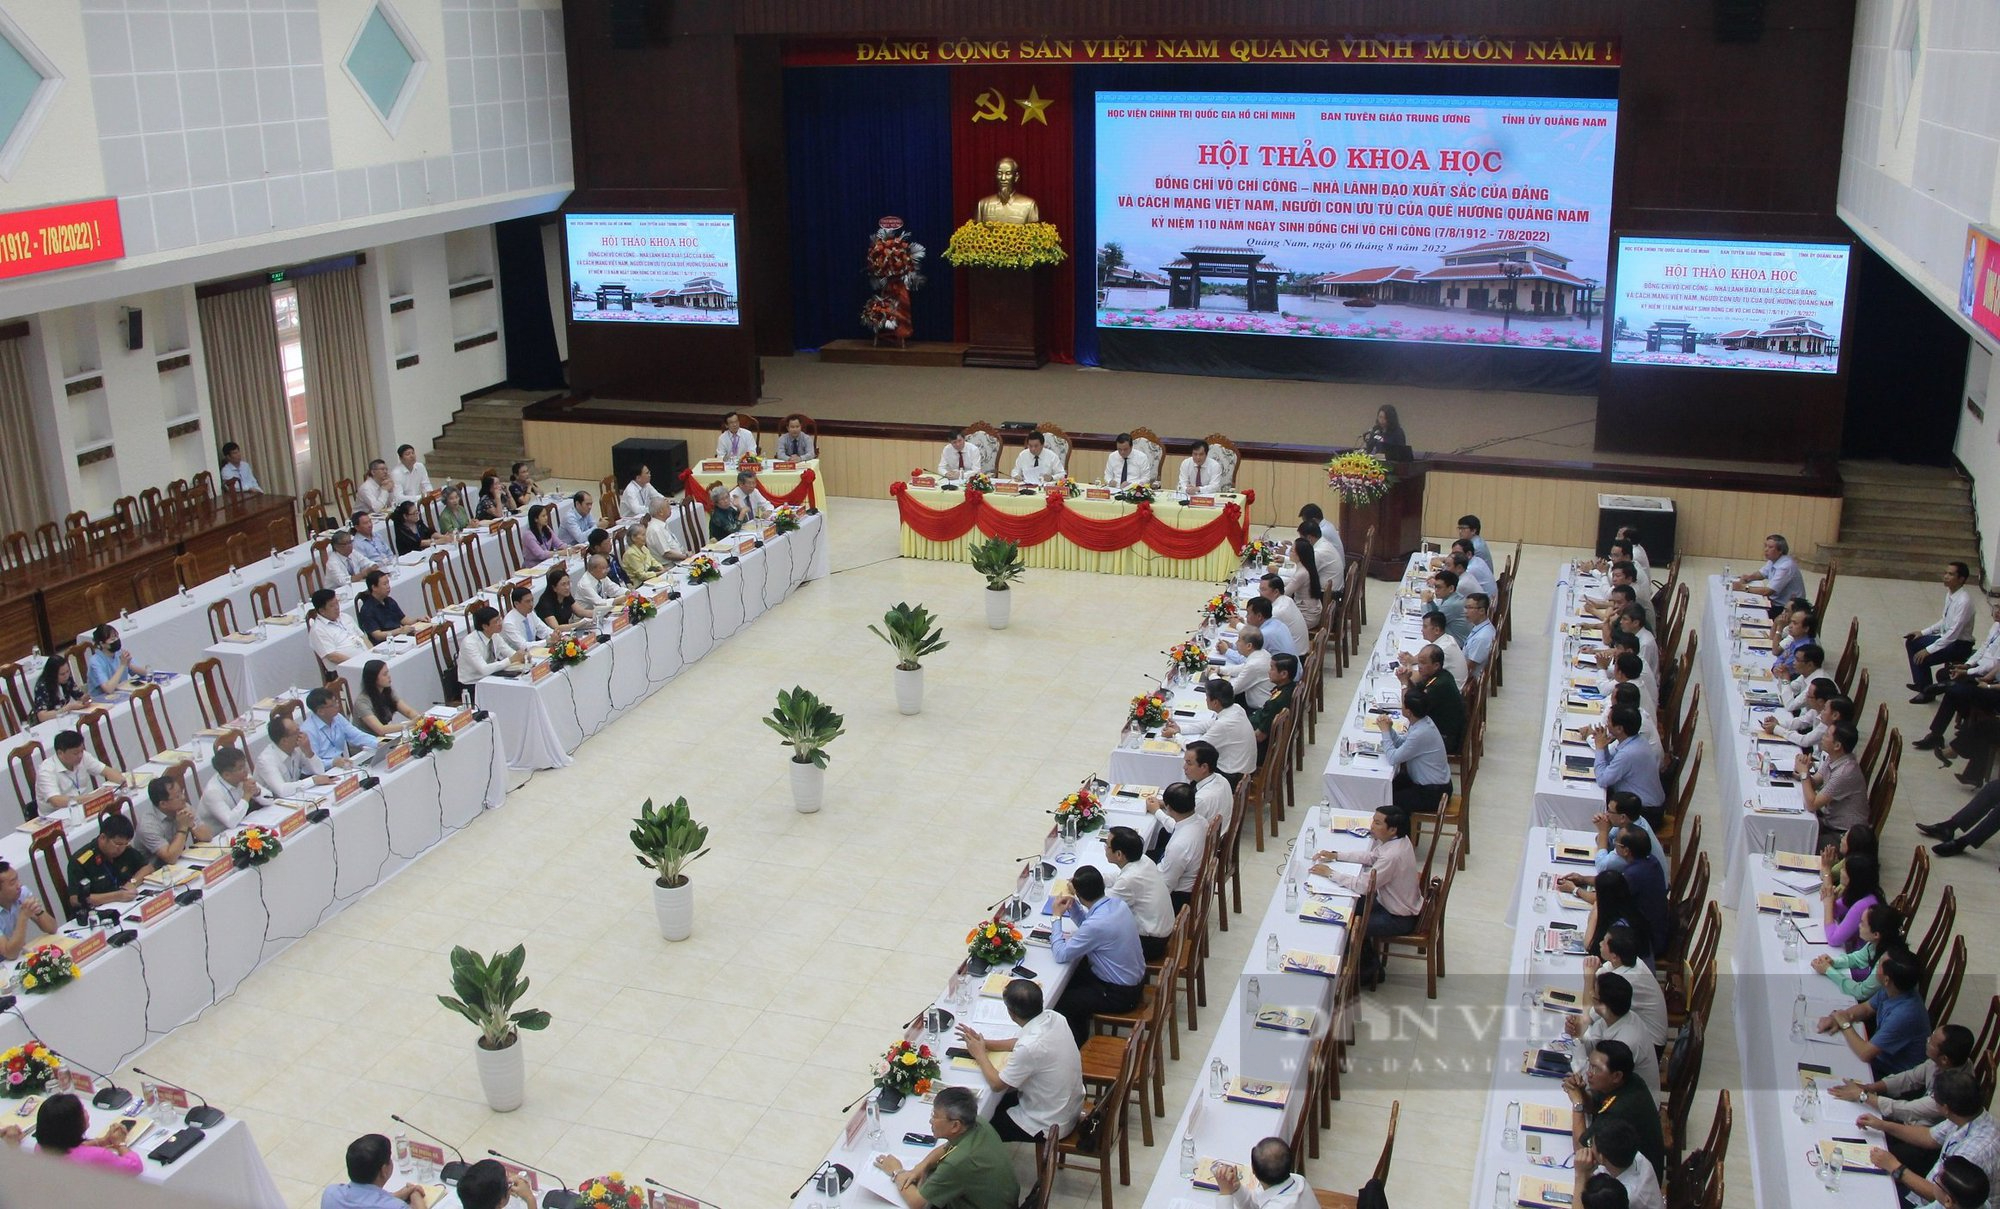 Hội thảo về đồng chí Võ Chí Công - Nhà lãnh đạo xuất sắc của Đảng và cách mạng Việt Nam - Ảnh 4.